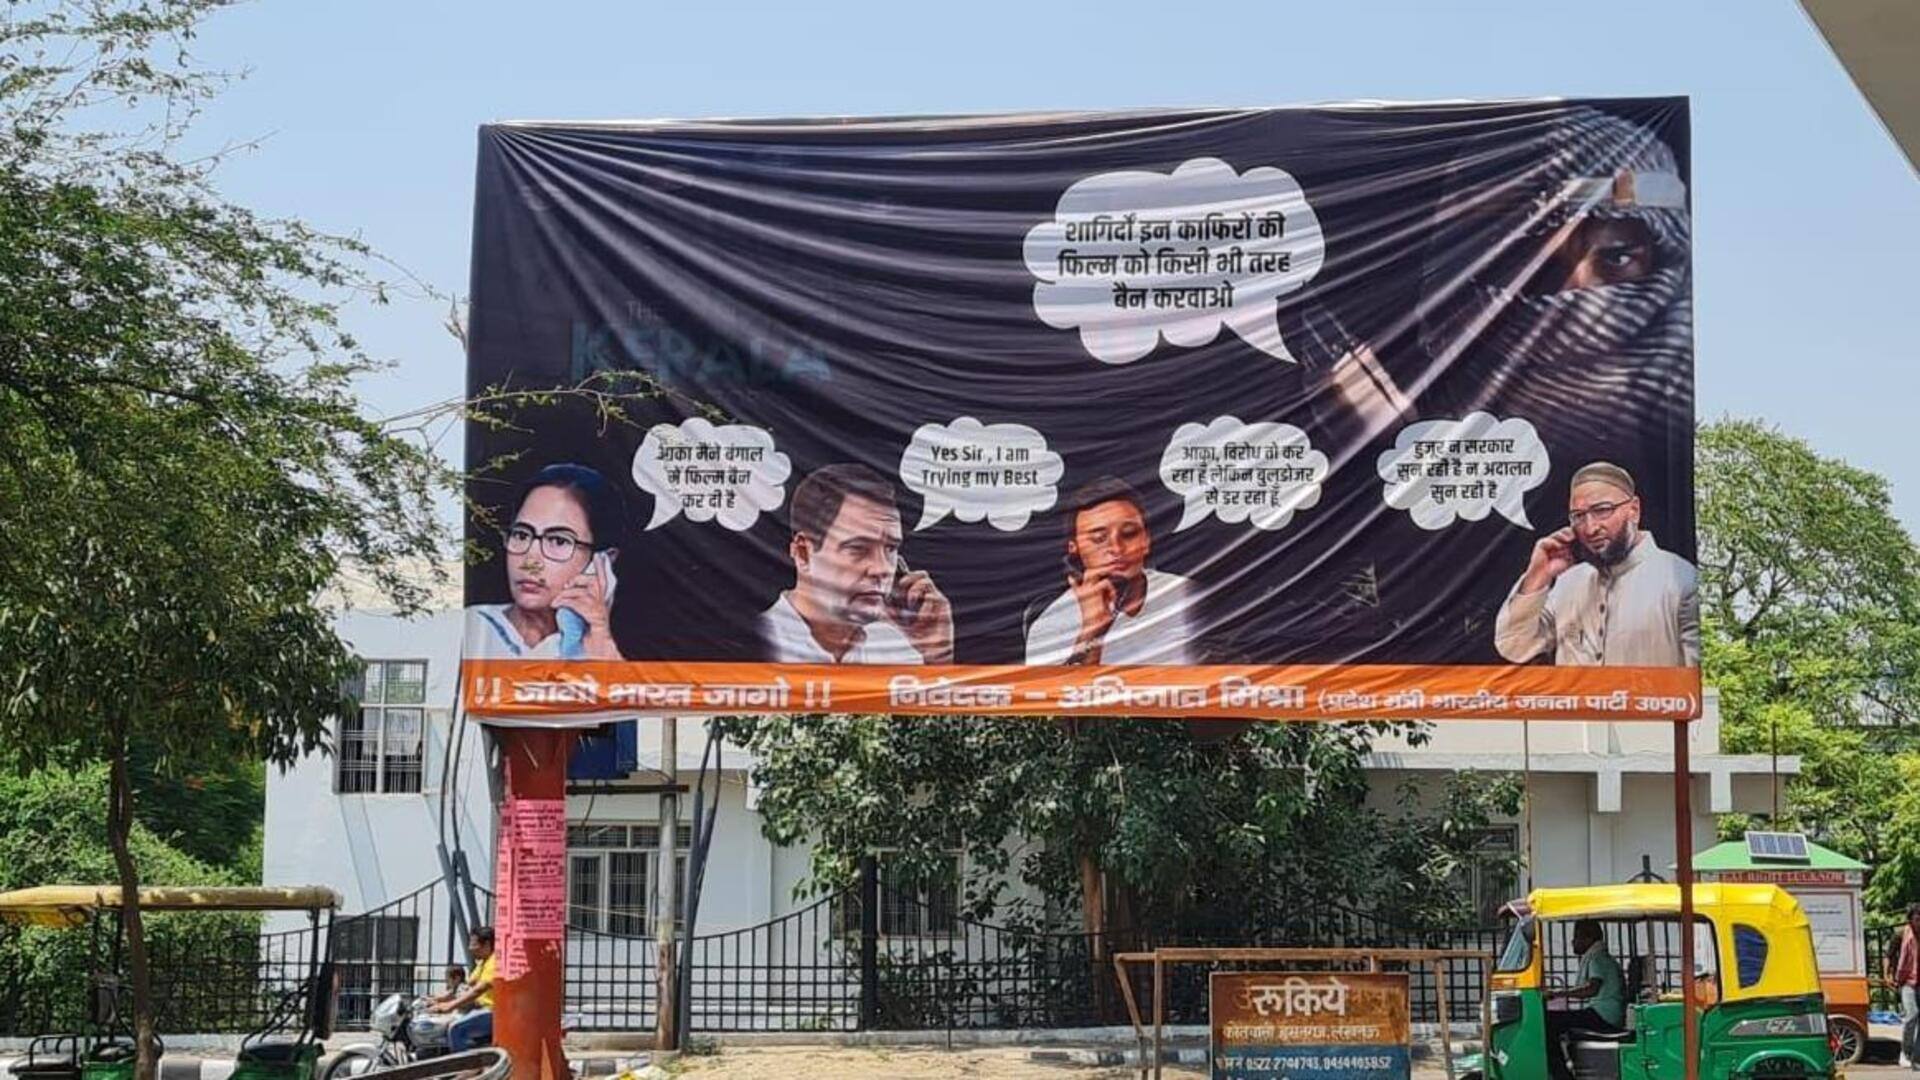 लखनऊ: 'द केरल स्टोरी' पर भाजपा का विवादित बैनर, विपक्ष को आतंकवादी से निर्देश लेते दिखाया